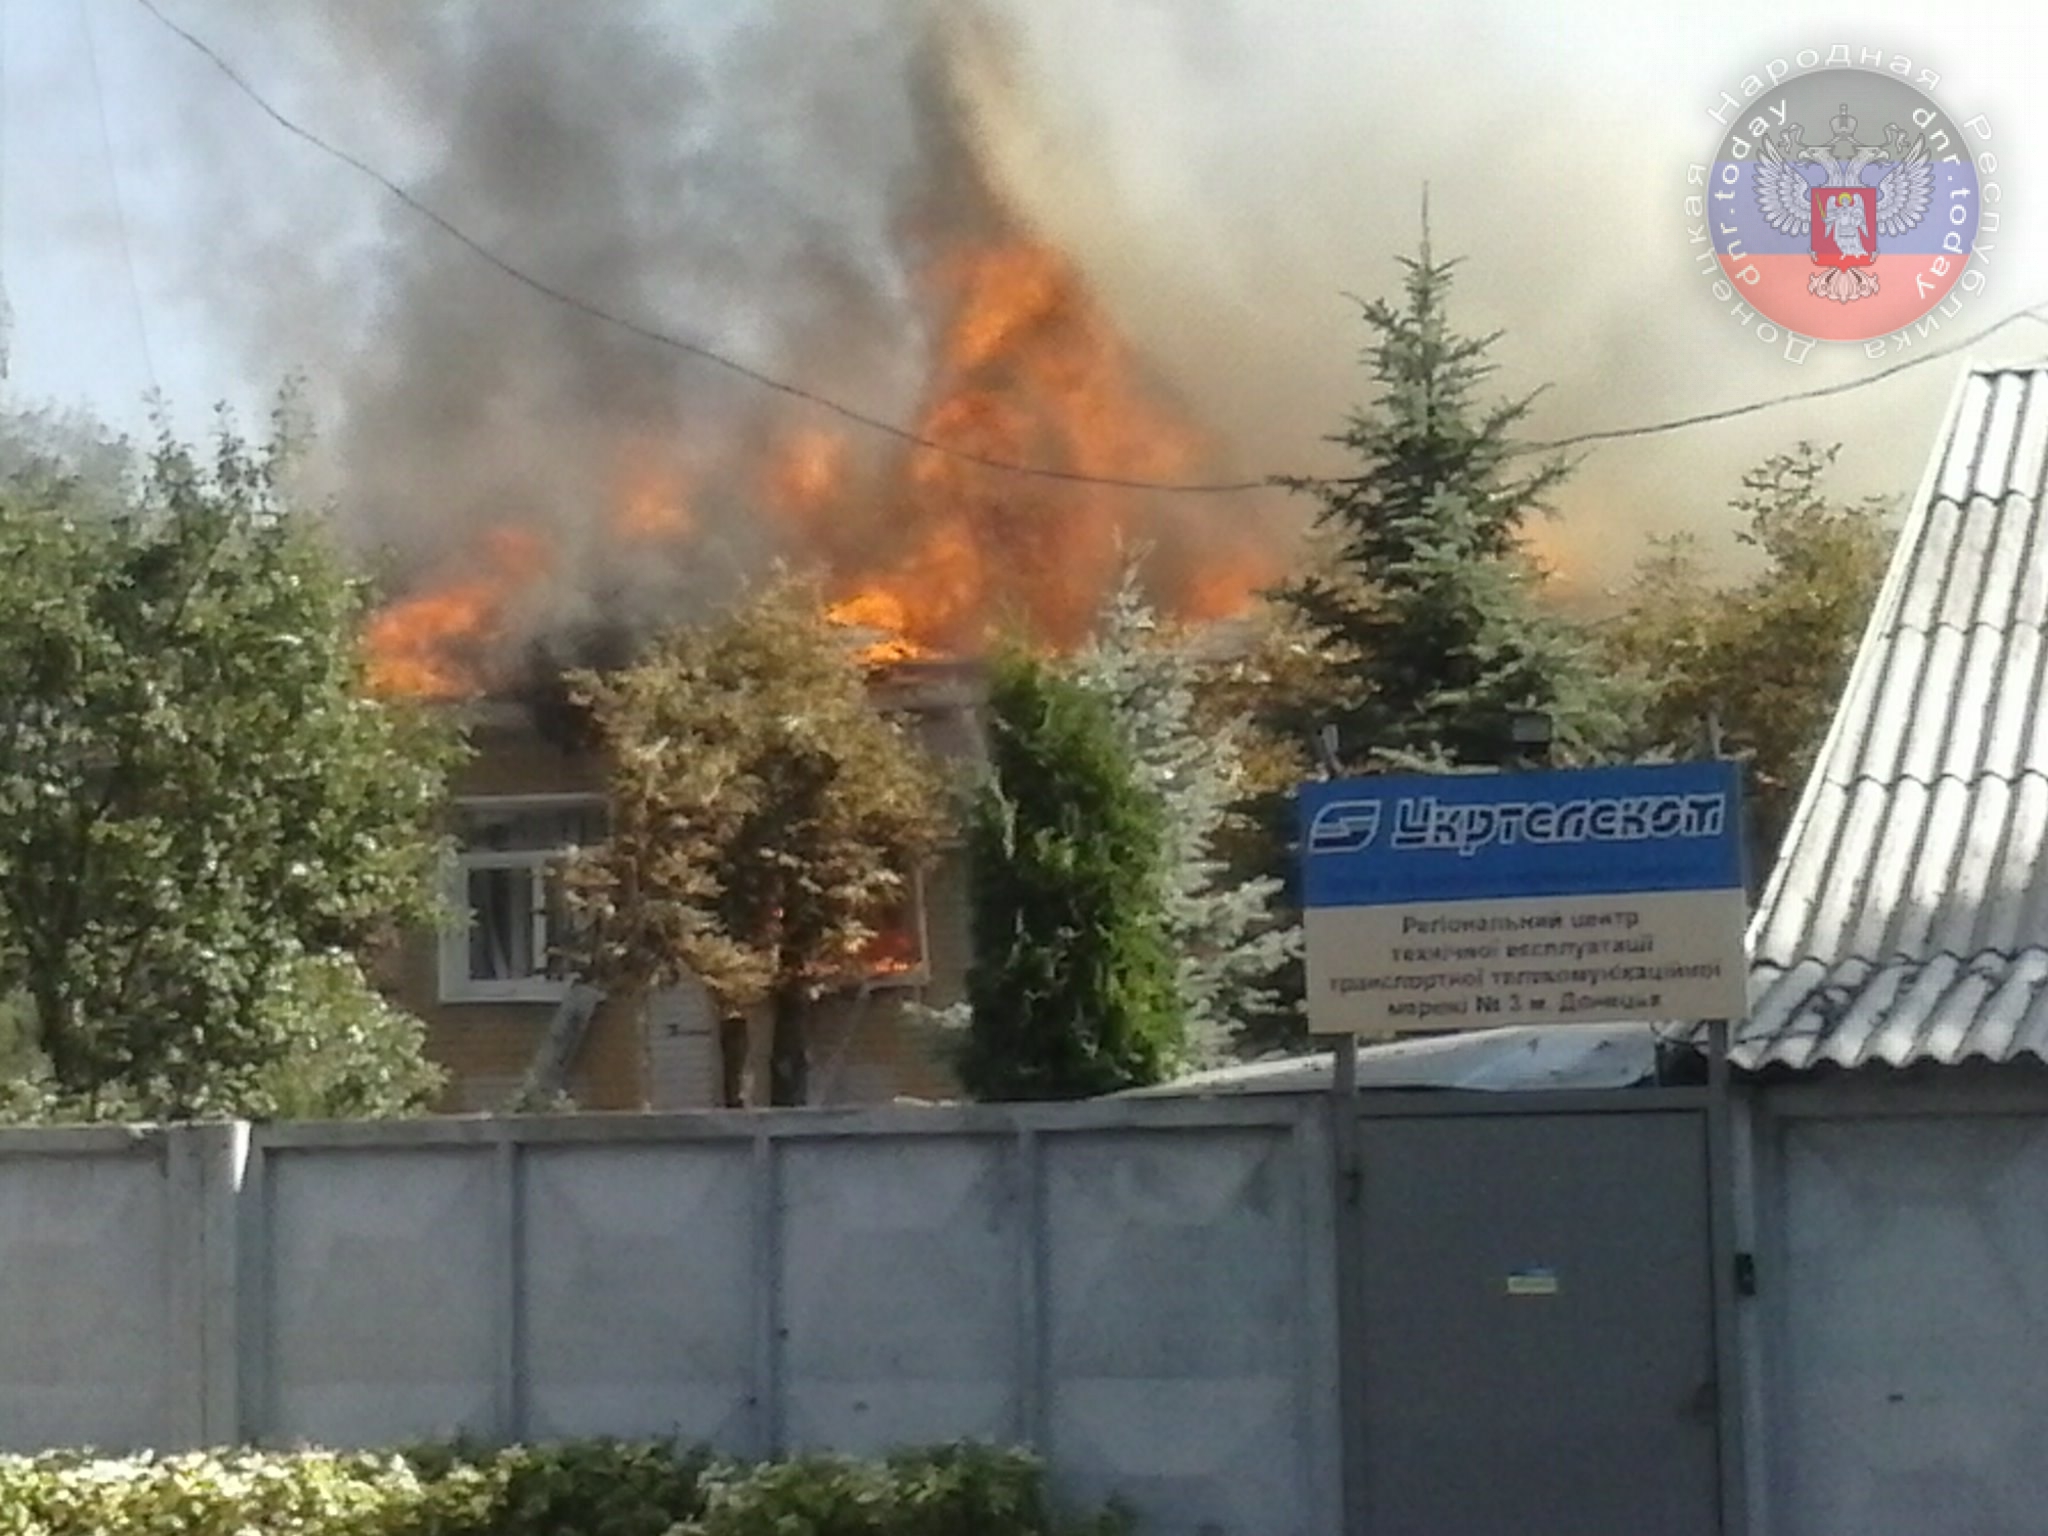 ДНР: повреждены офисы "Укртелеком", "Шериф-тур", транспорт и ряд жилых домов